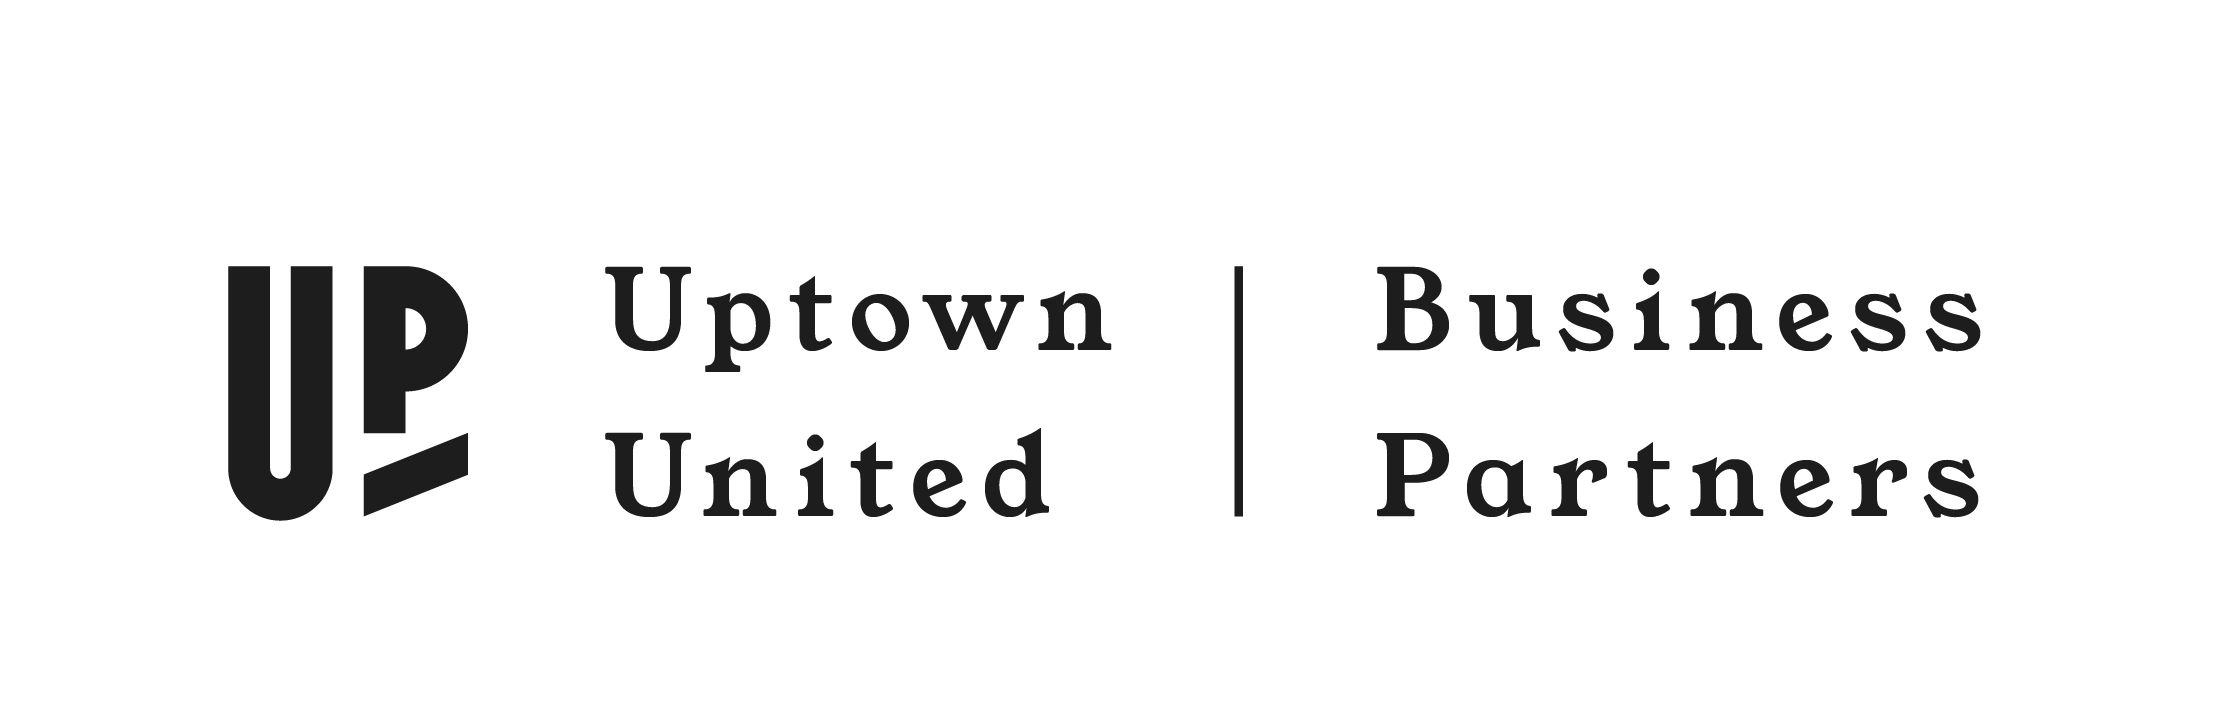 Uptown United